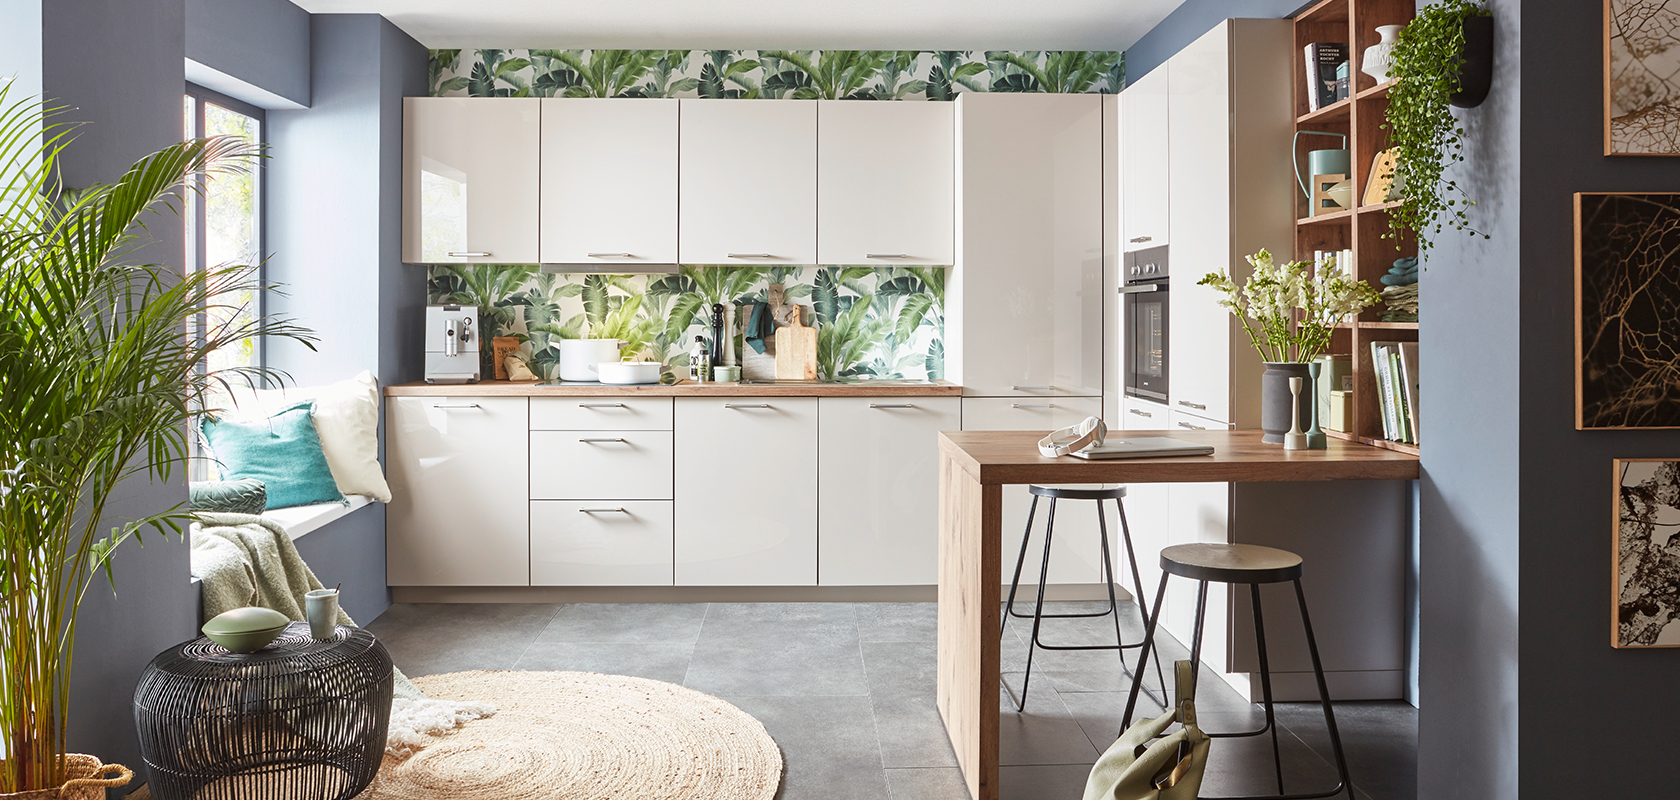 Interni di cucina moderna con armadi bianchi, carta da parati tropicale, piano di lavoro in legno, sgabelli da bar eleganti e accenti di piante verdi che creano uno spazio accogliente e contemporaneo.